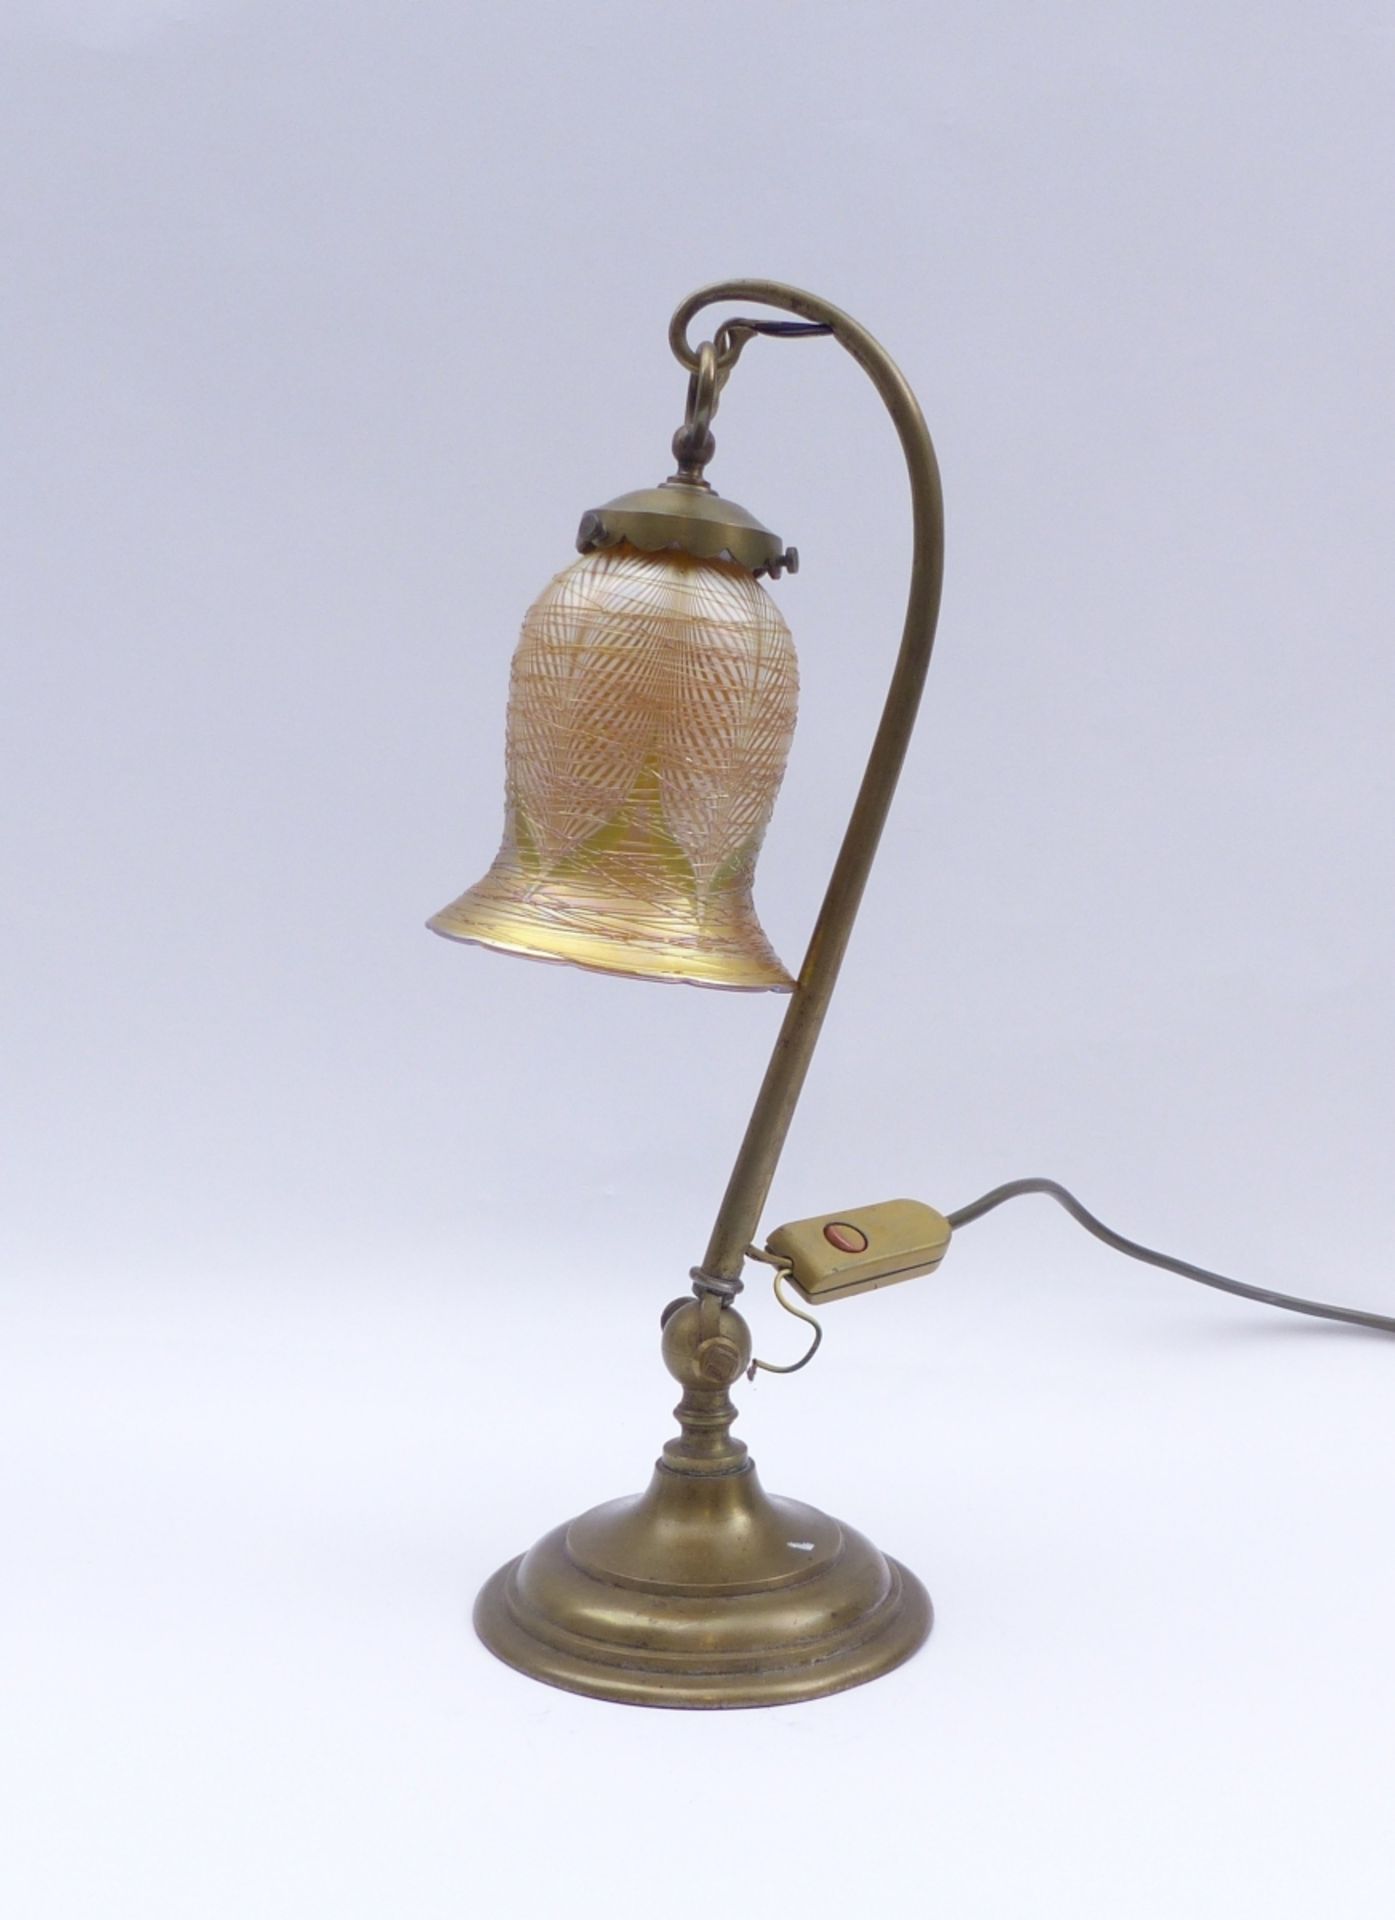 Tischlampe mit späterem Schirm, 19./20. Jh. - Image 2 of 2